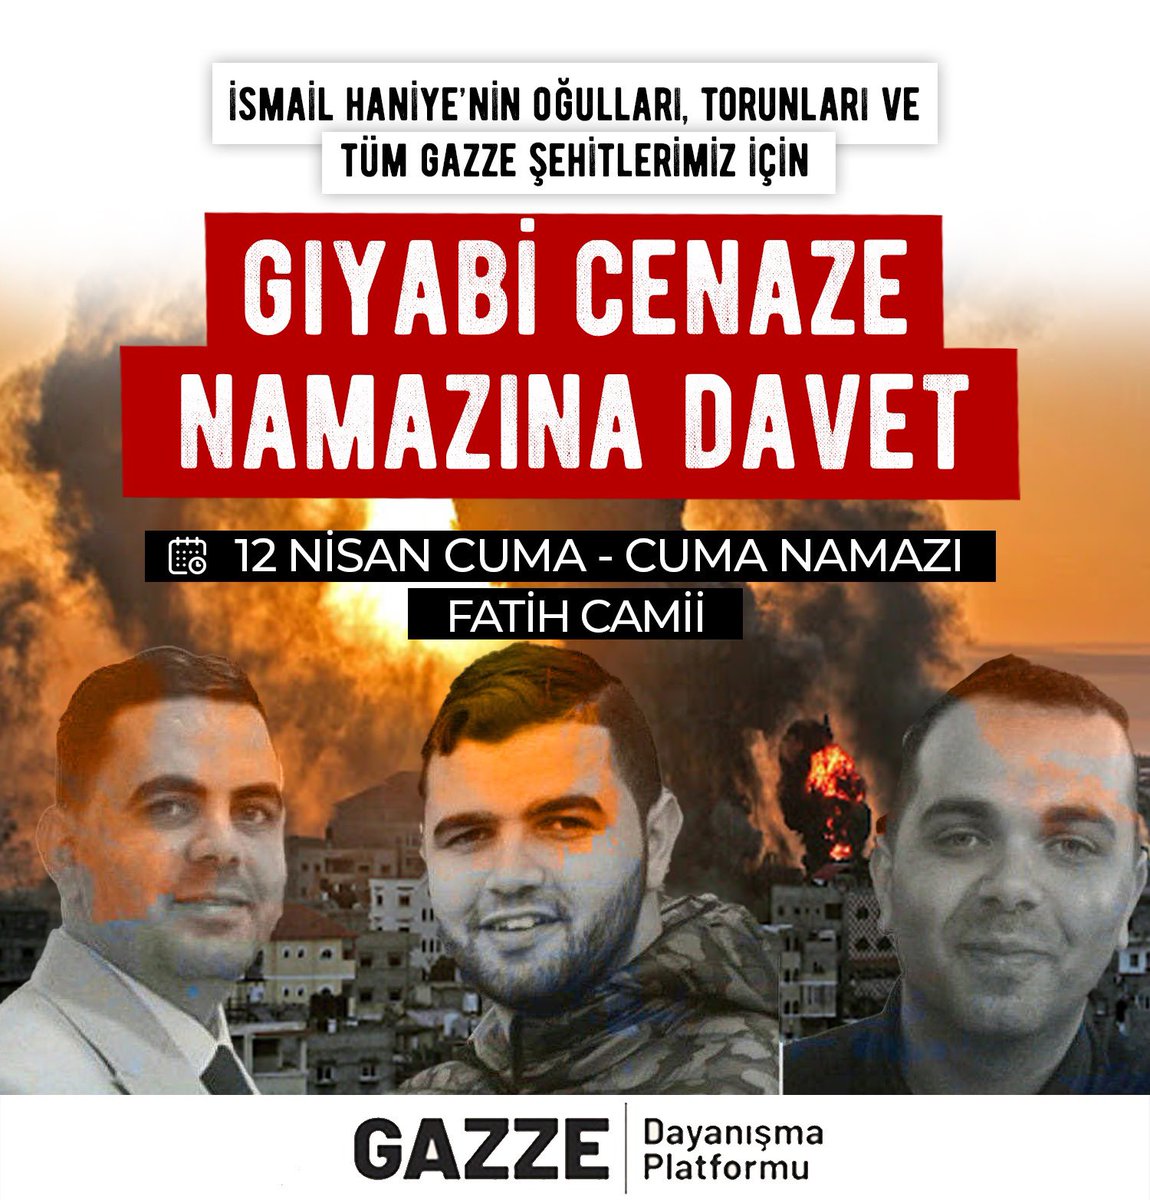 Gıyabi Cenaze Namazına Davet İsmail Haniye’nin oğulları, torunları ve tüm Gazze şehitlerimiz için 12 Nisan günü, cuma namazı sonrası Fatih Camiinde cenaze namazı kılacağız. - Gazze Dayanışma Platformu